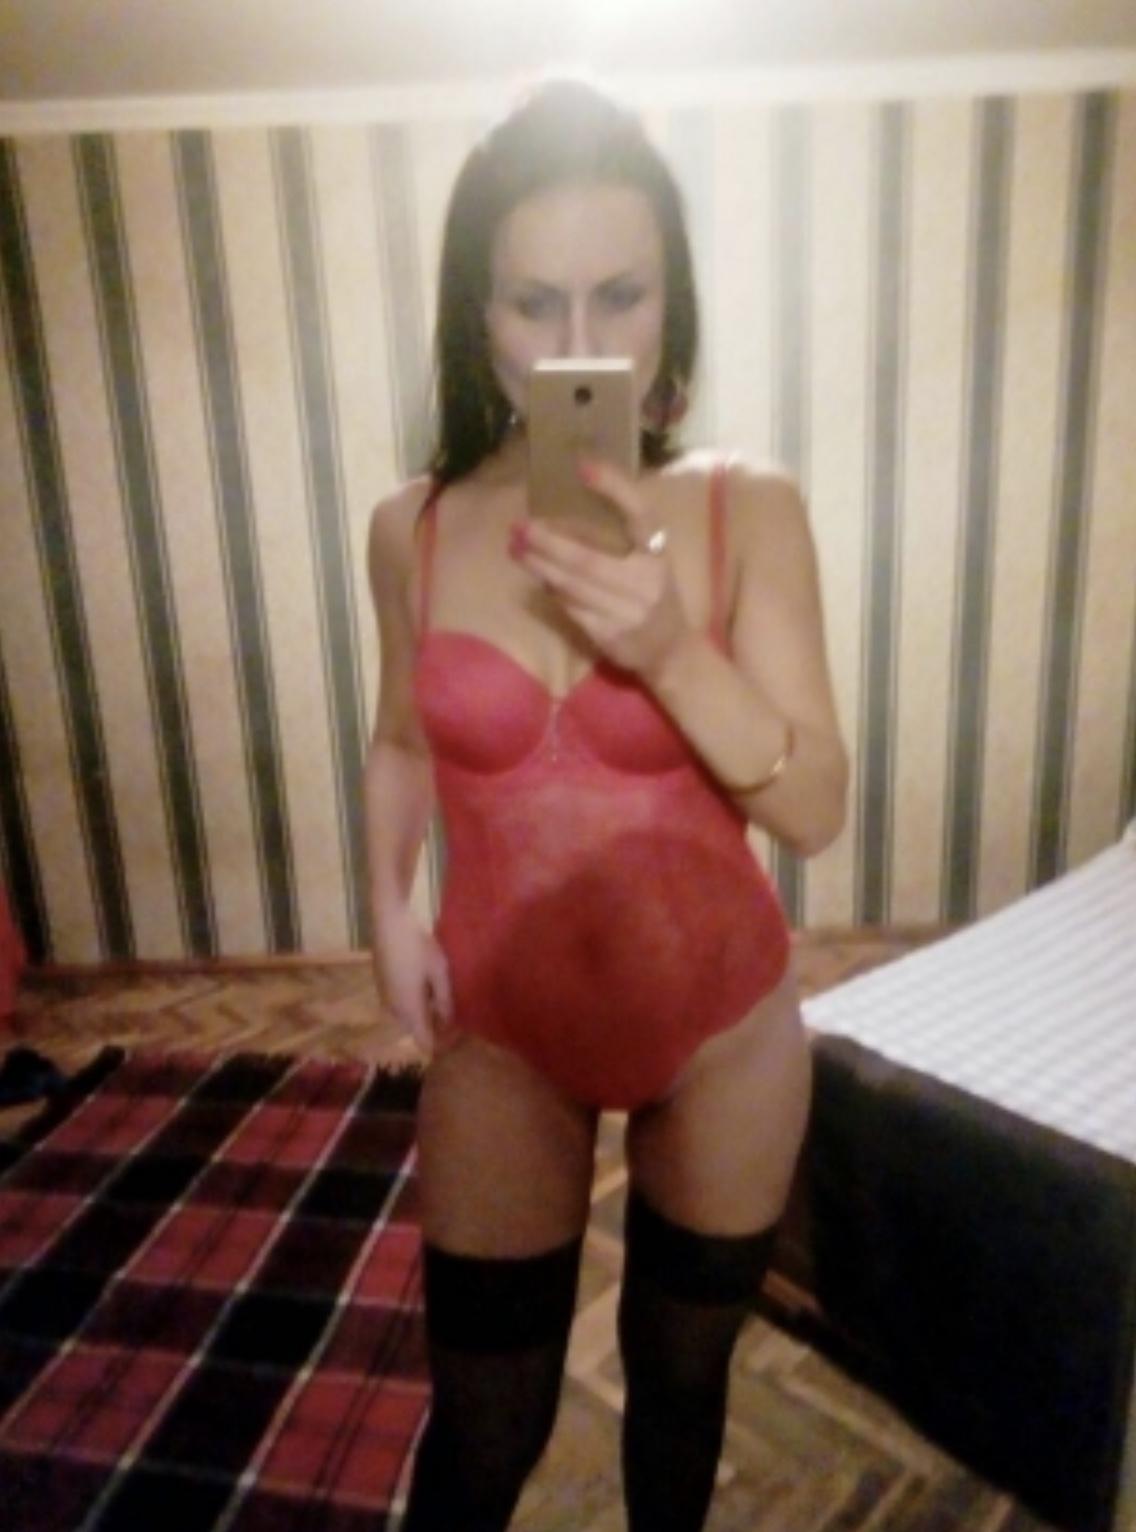 Проститутка Dasha, фото 1, тел: 0964776851. City Center - Киев